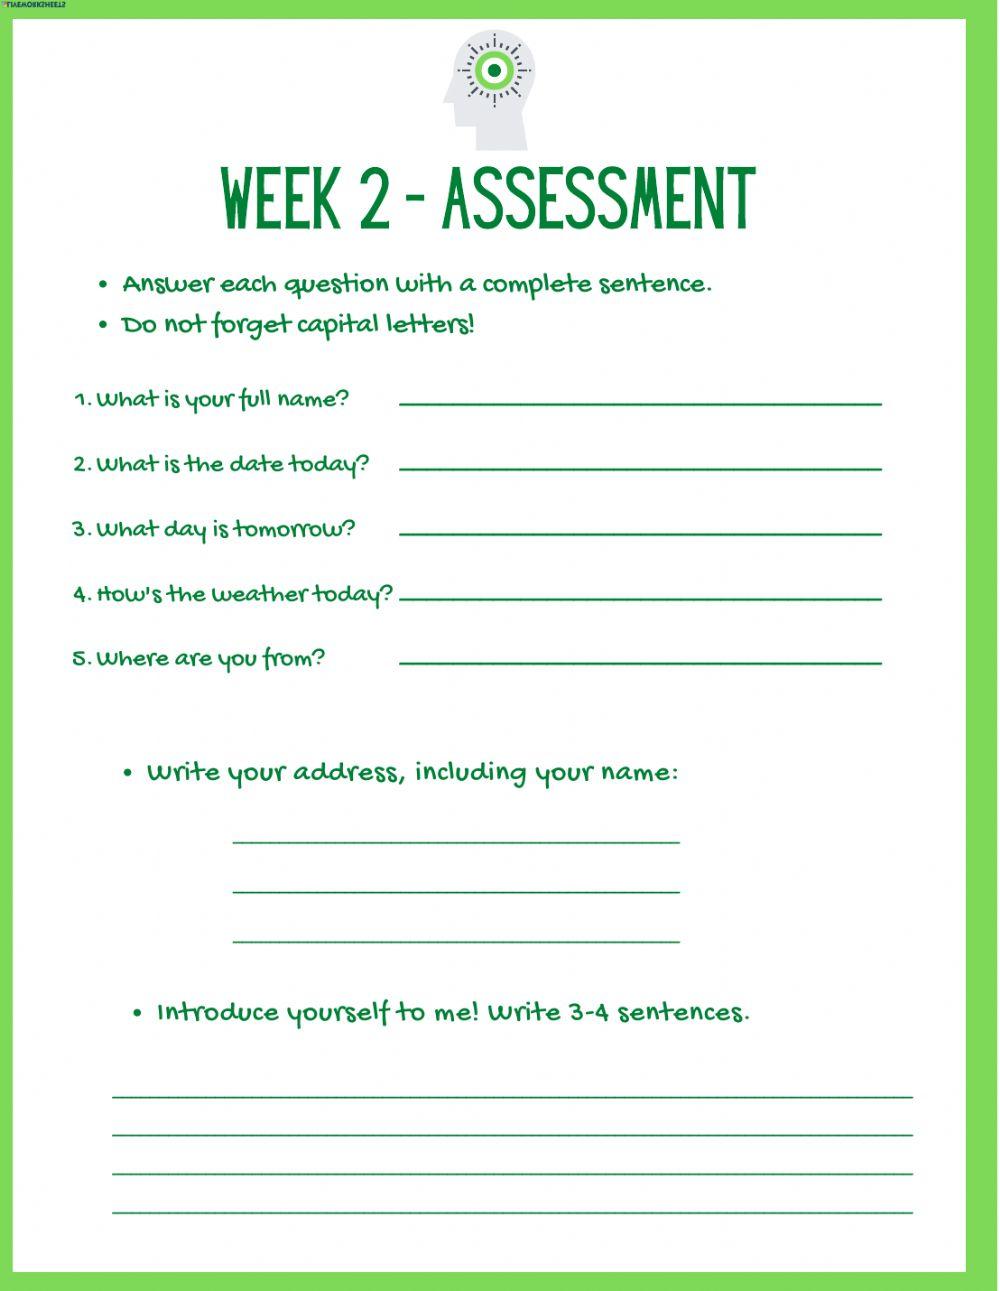 Week 2 Assessment